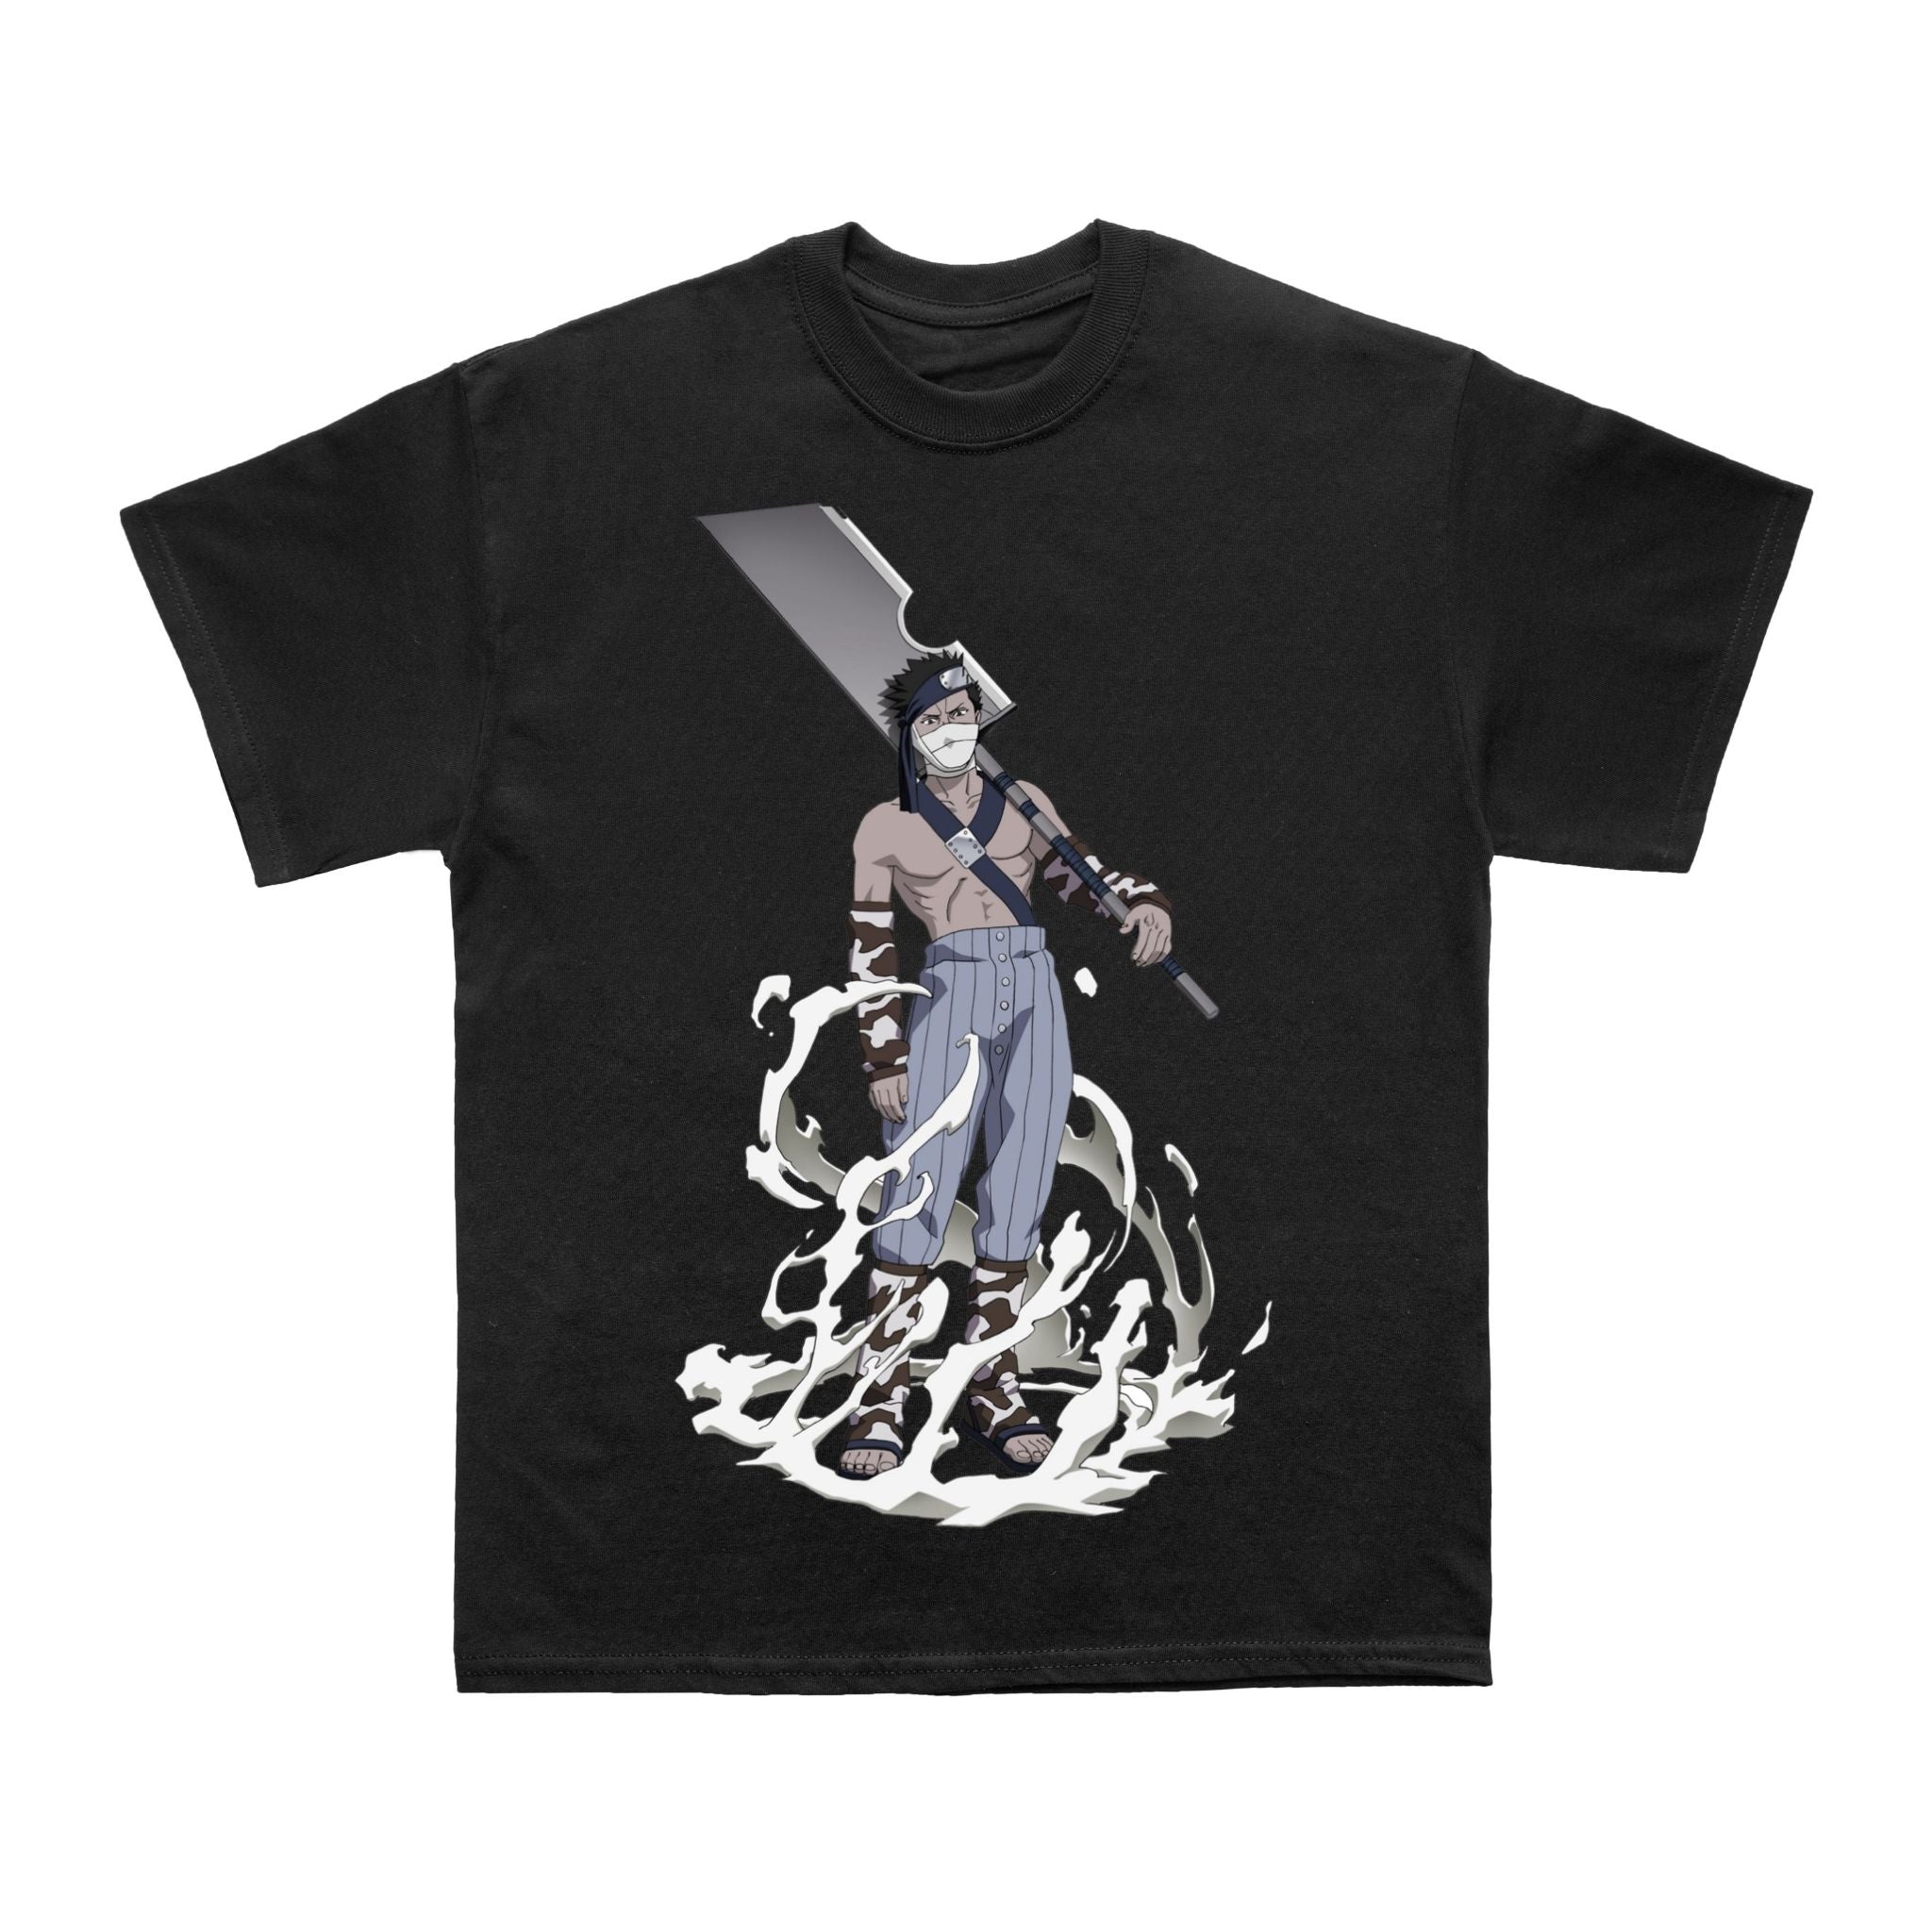 Ninja  Art Anime Inspired T shirt